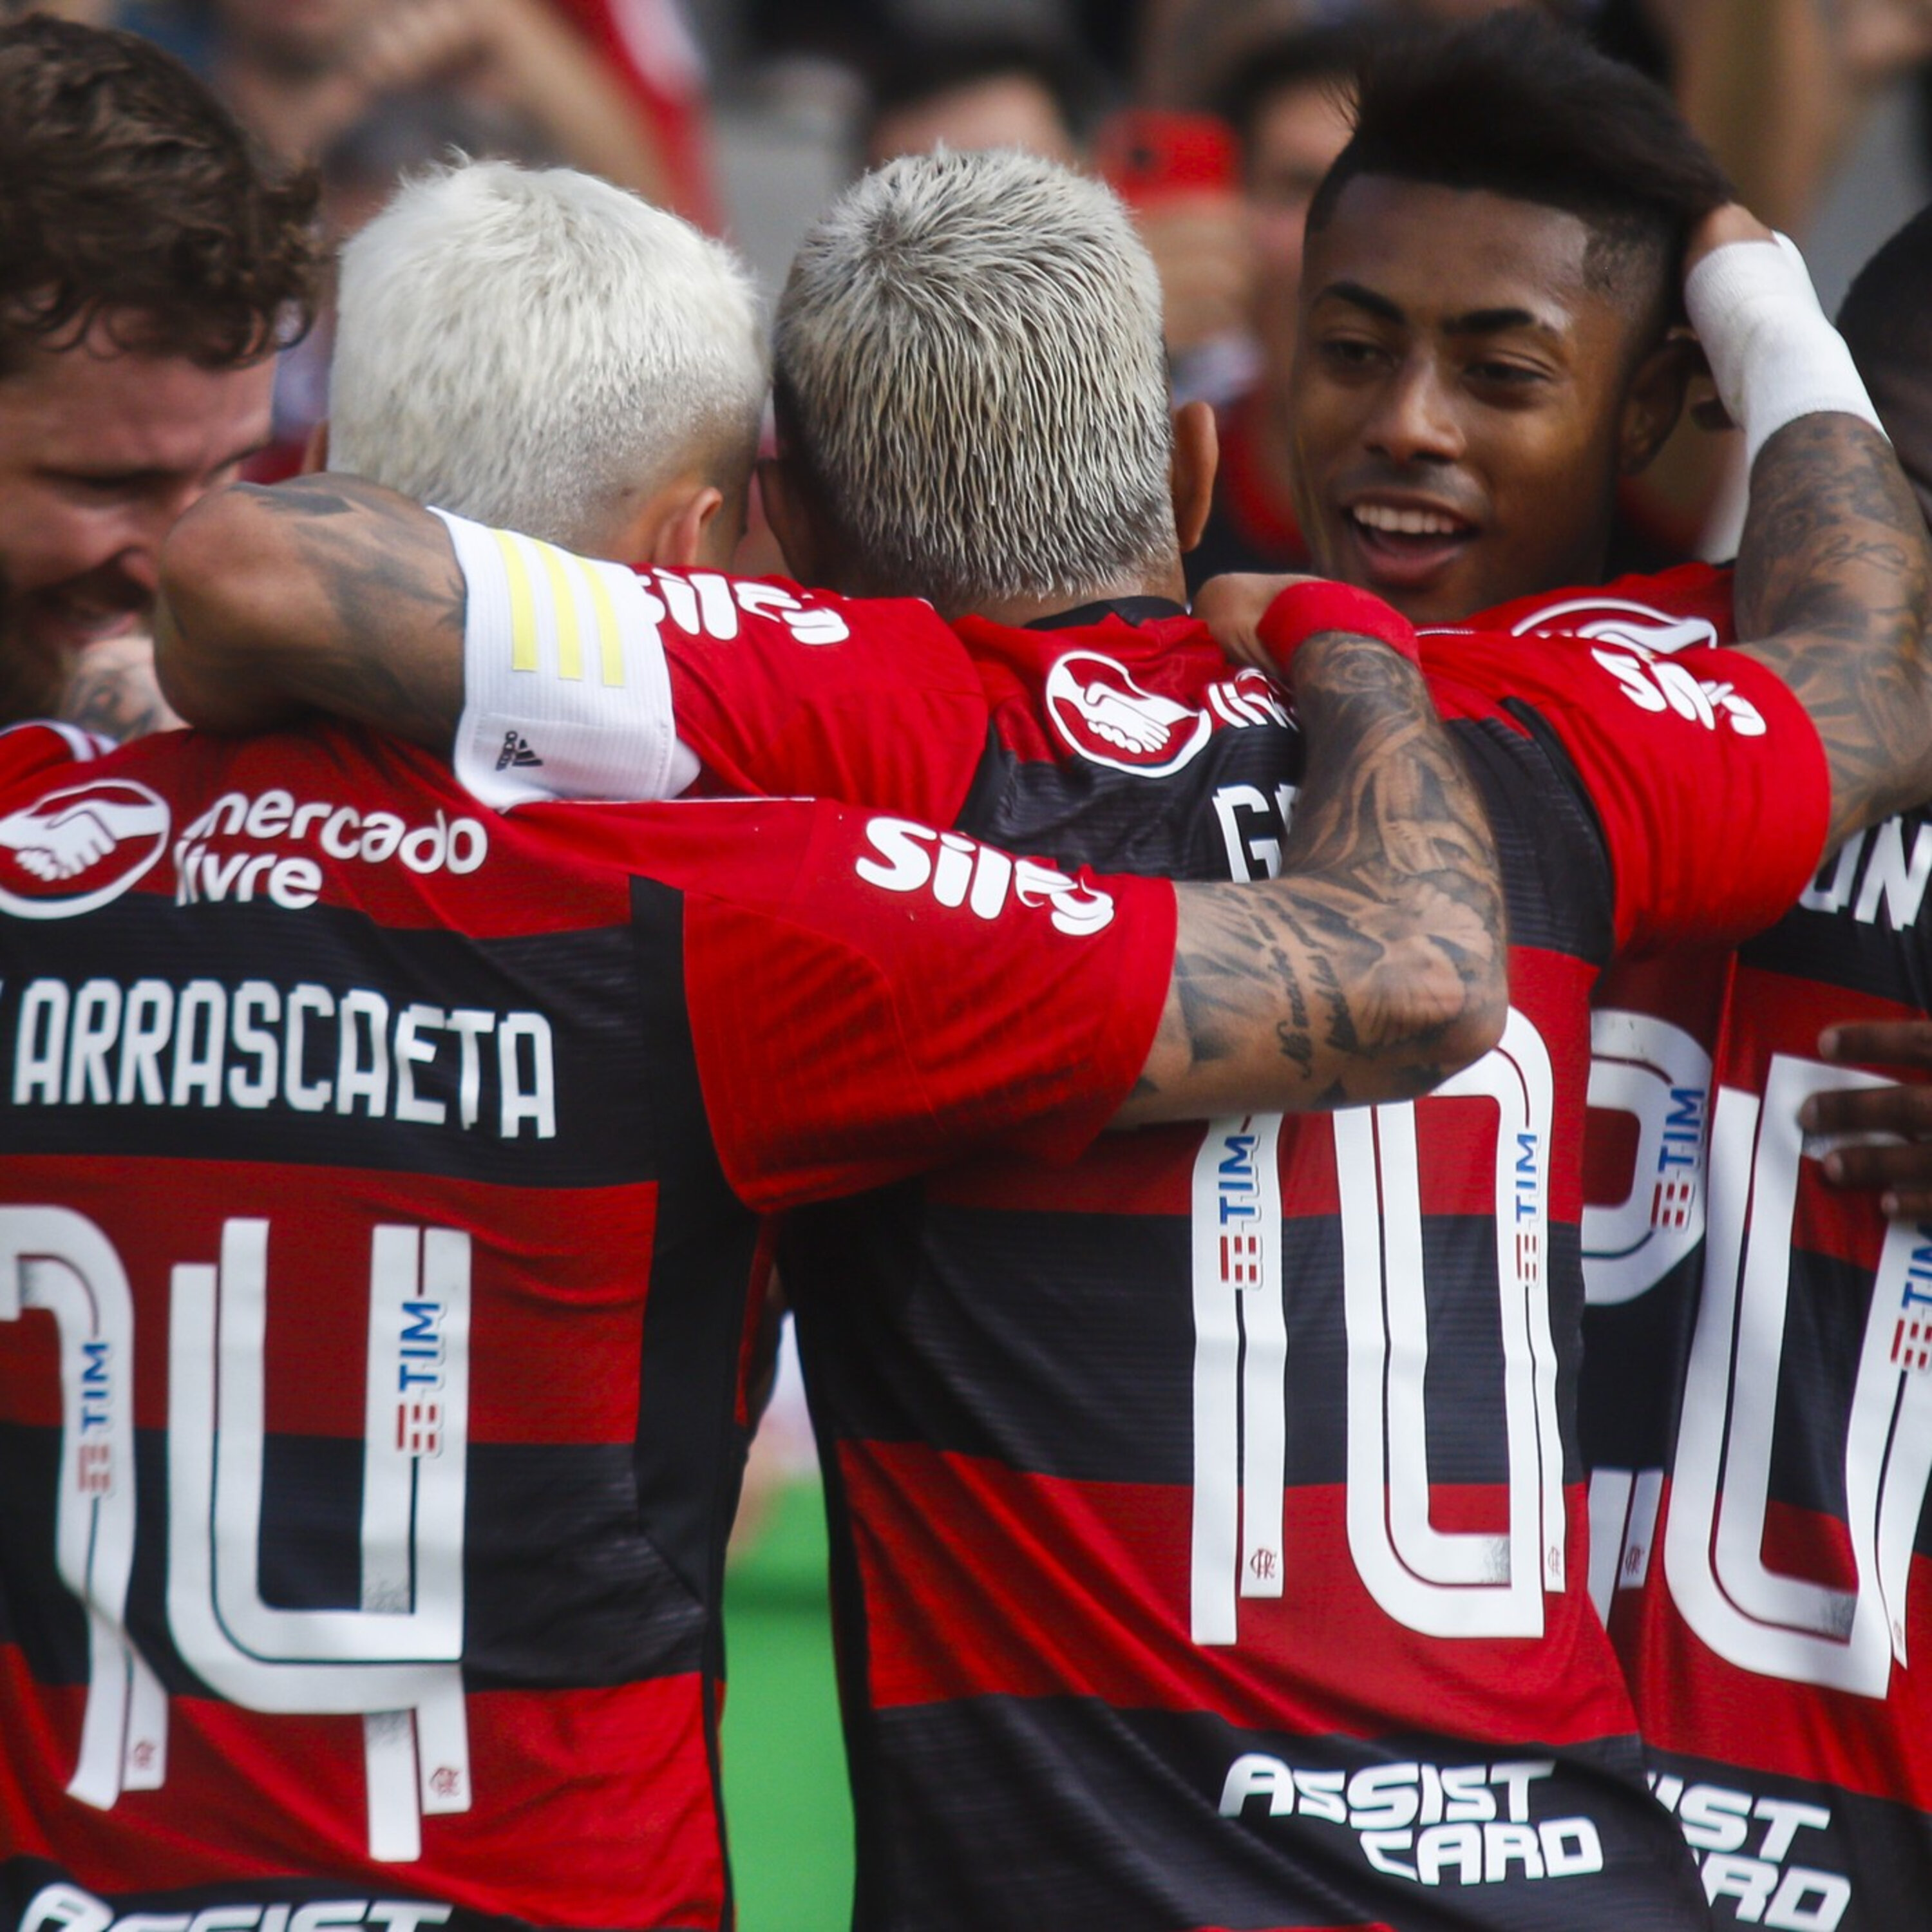 GE Flamengo #361 - Fla consegue vitória no fim, mas não dá sinais de reviravolta no Brasileirão